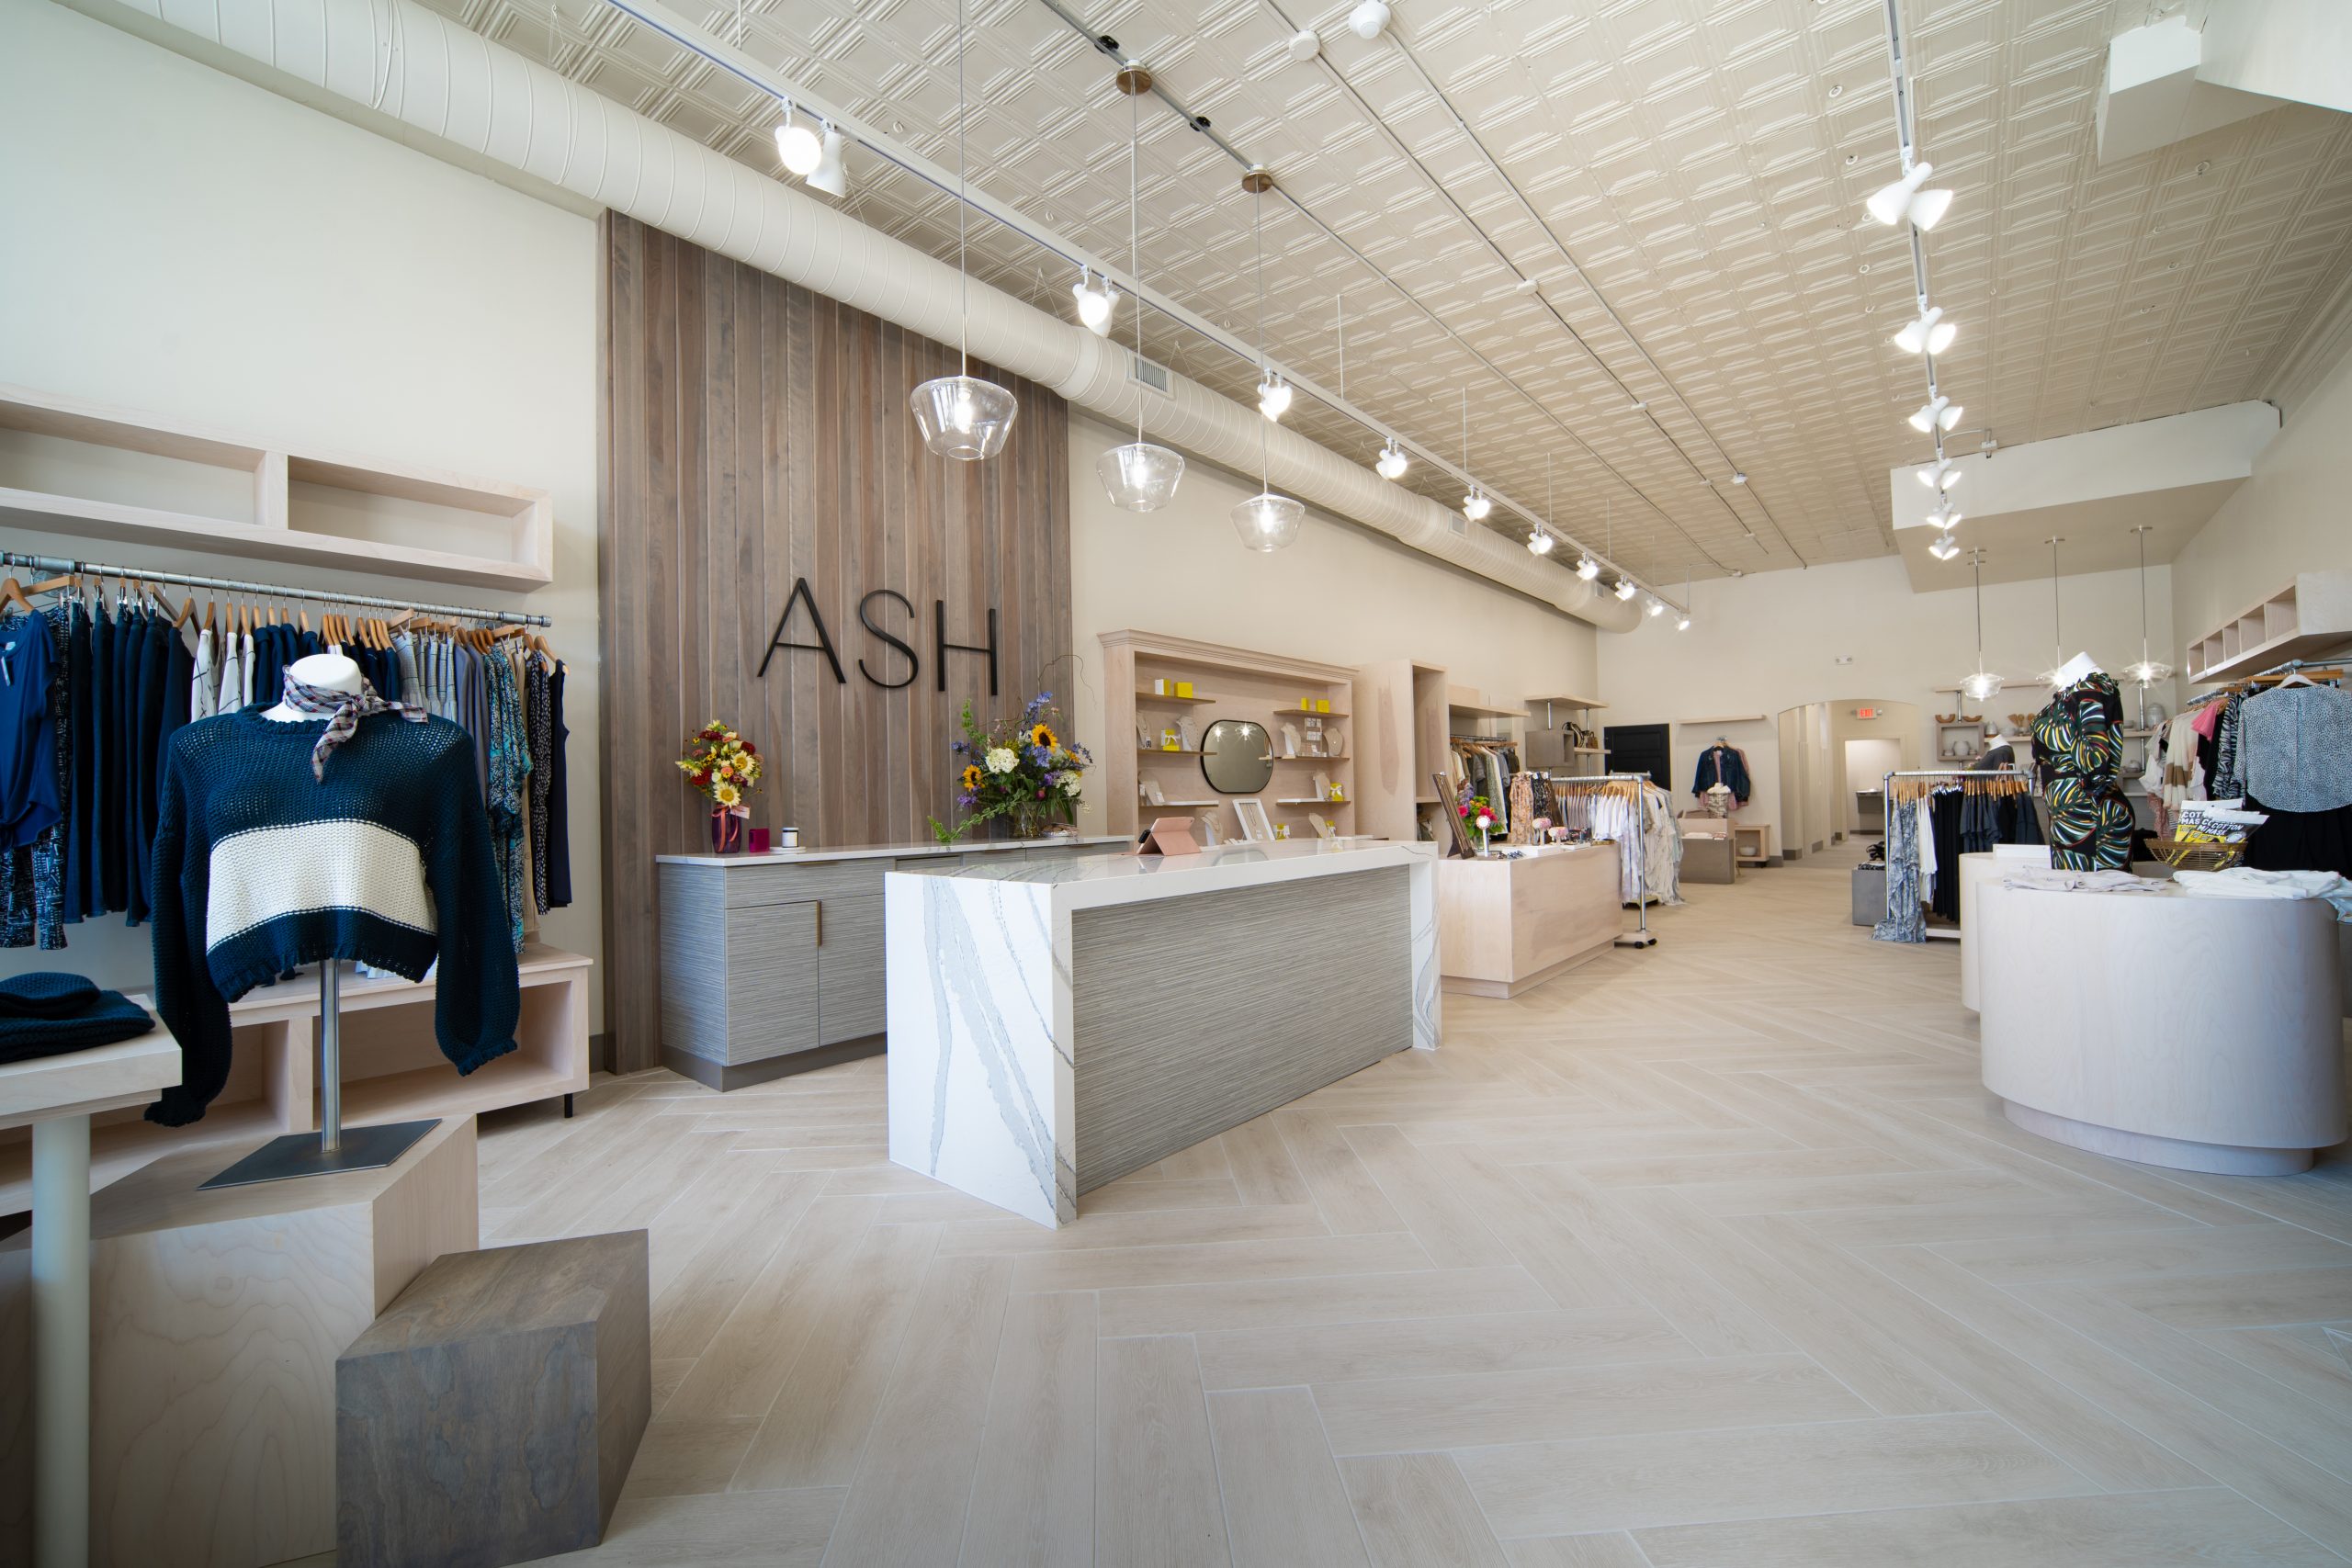 Ash Boutique